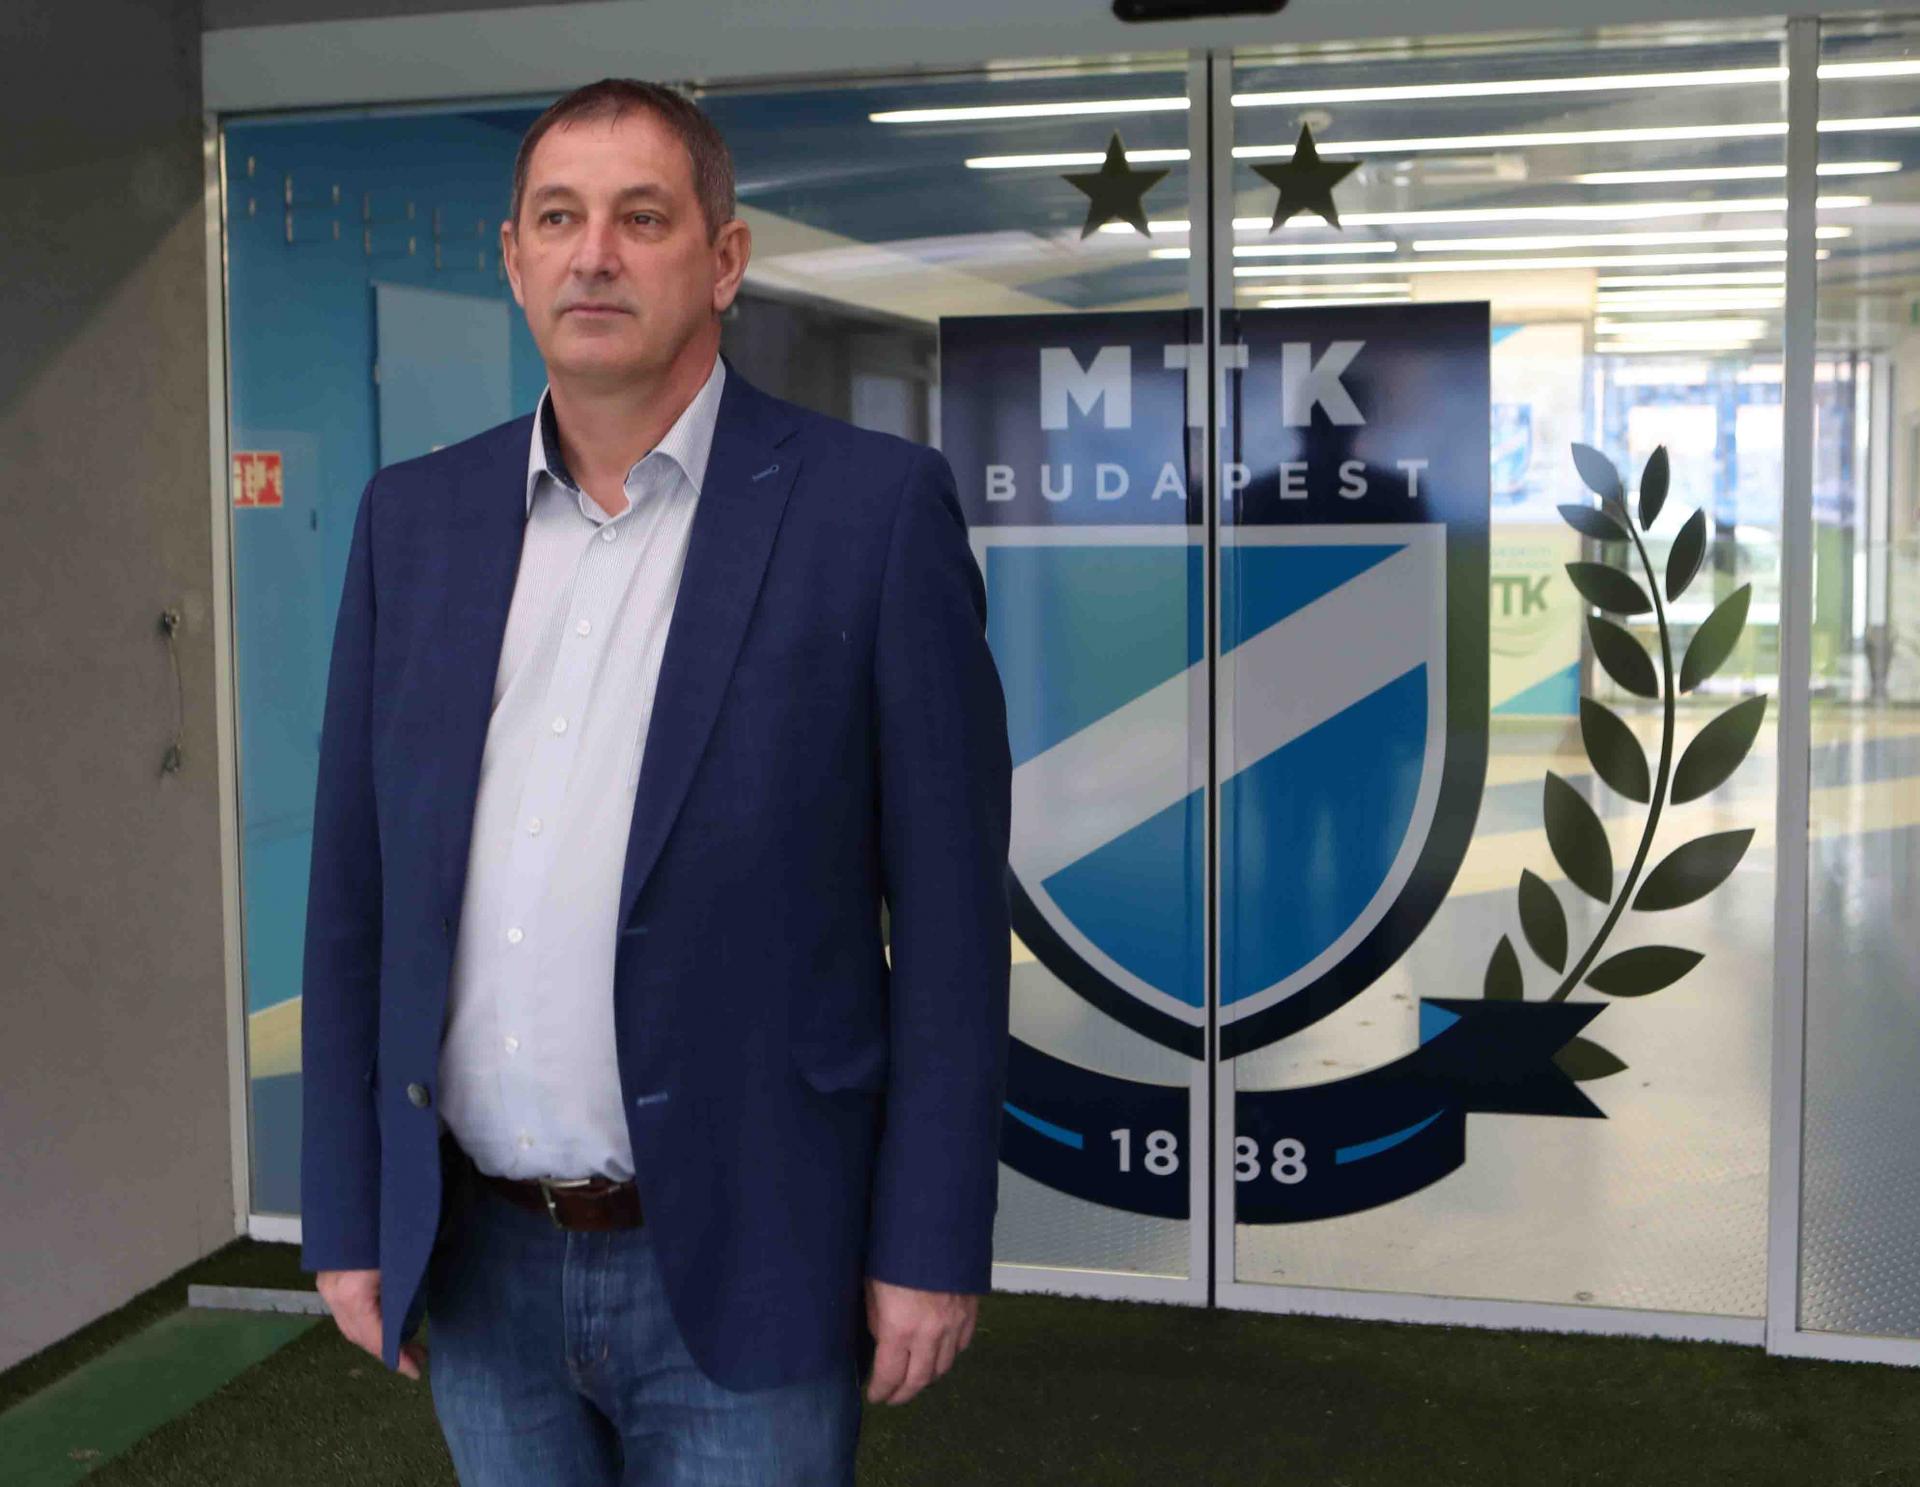 "Olyan éles váltások történtek, amelyek nagy hatással lesznek az MTK utánpótlás-nevelésére" - interjú Salkovics Gábor